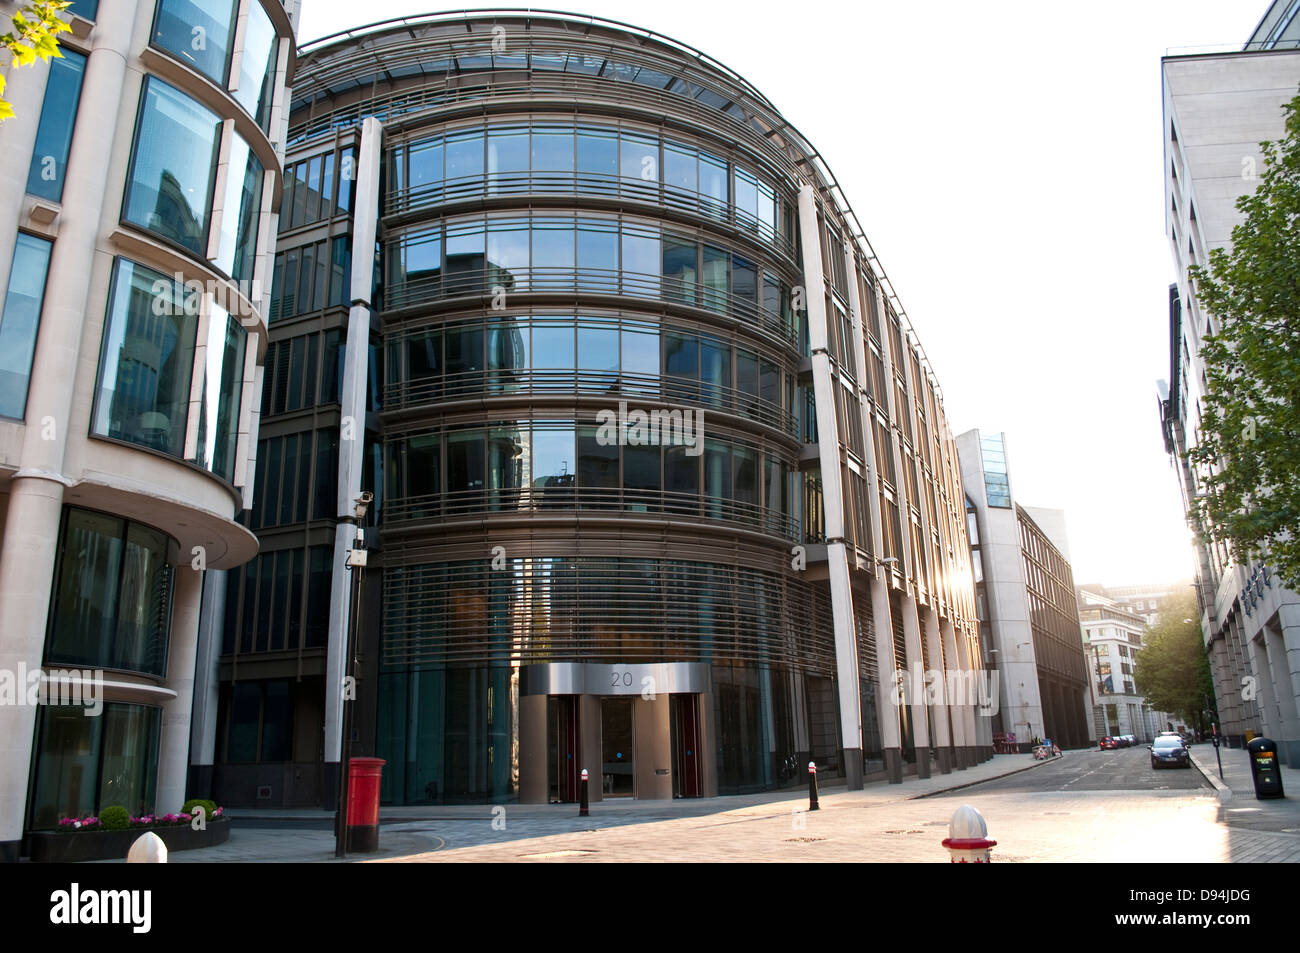 Rue déserte dans la ville de London, EC2, UK Banque D'Images